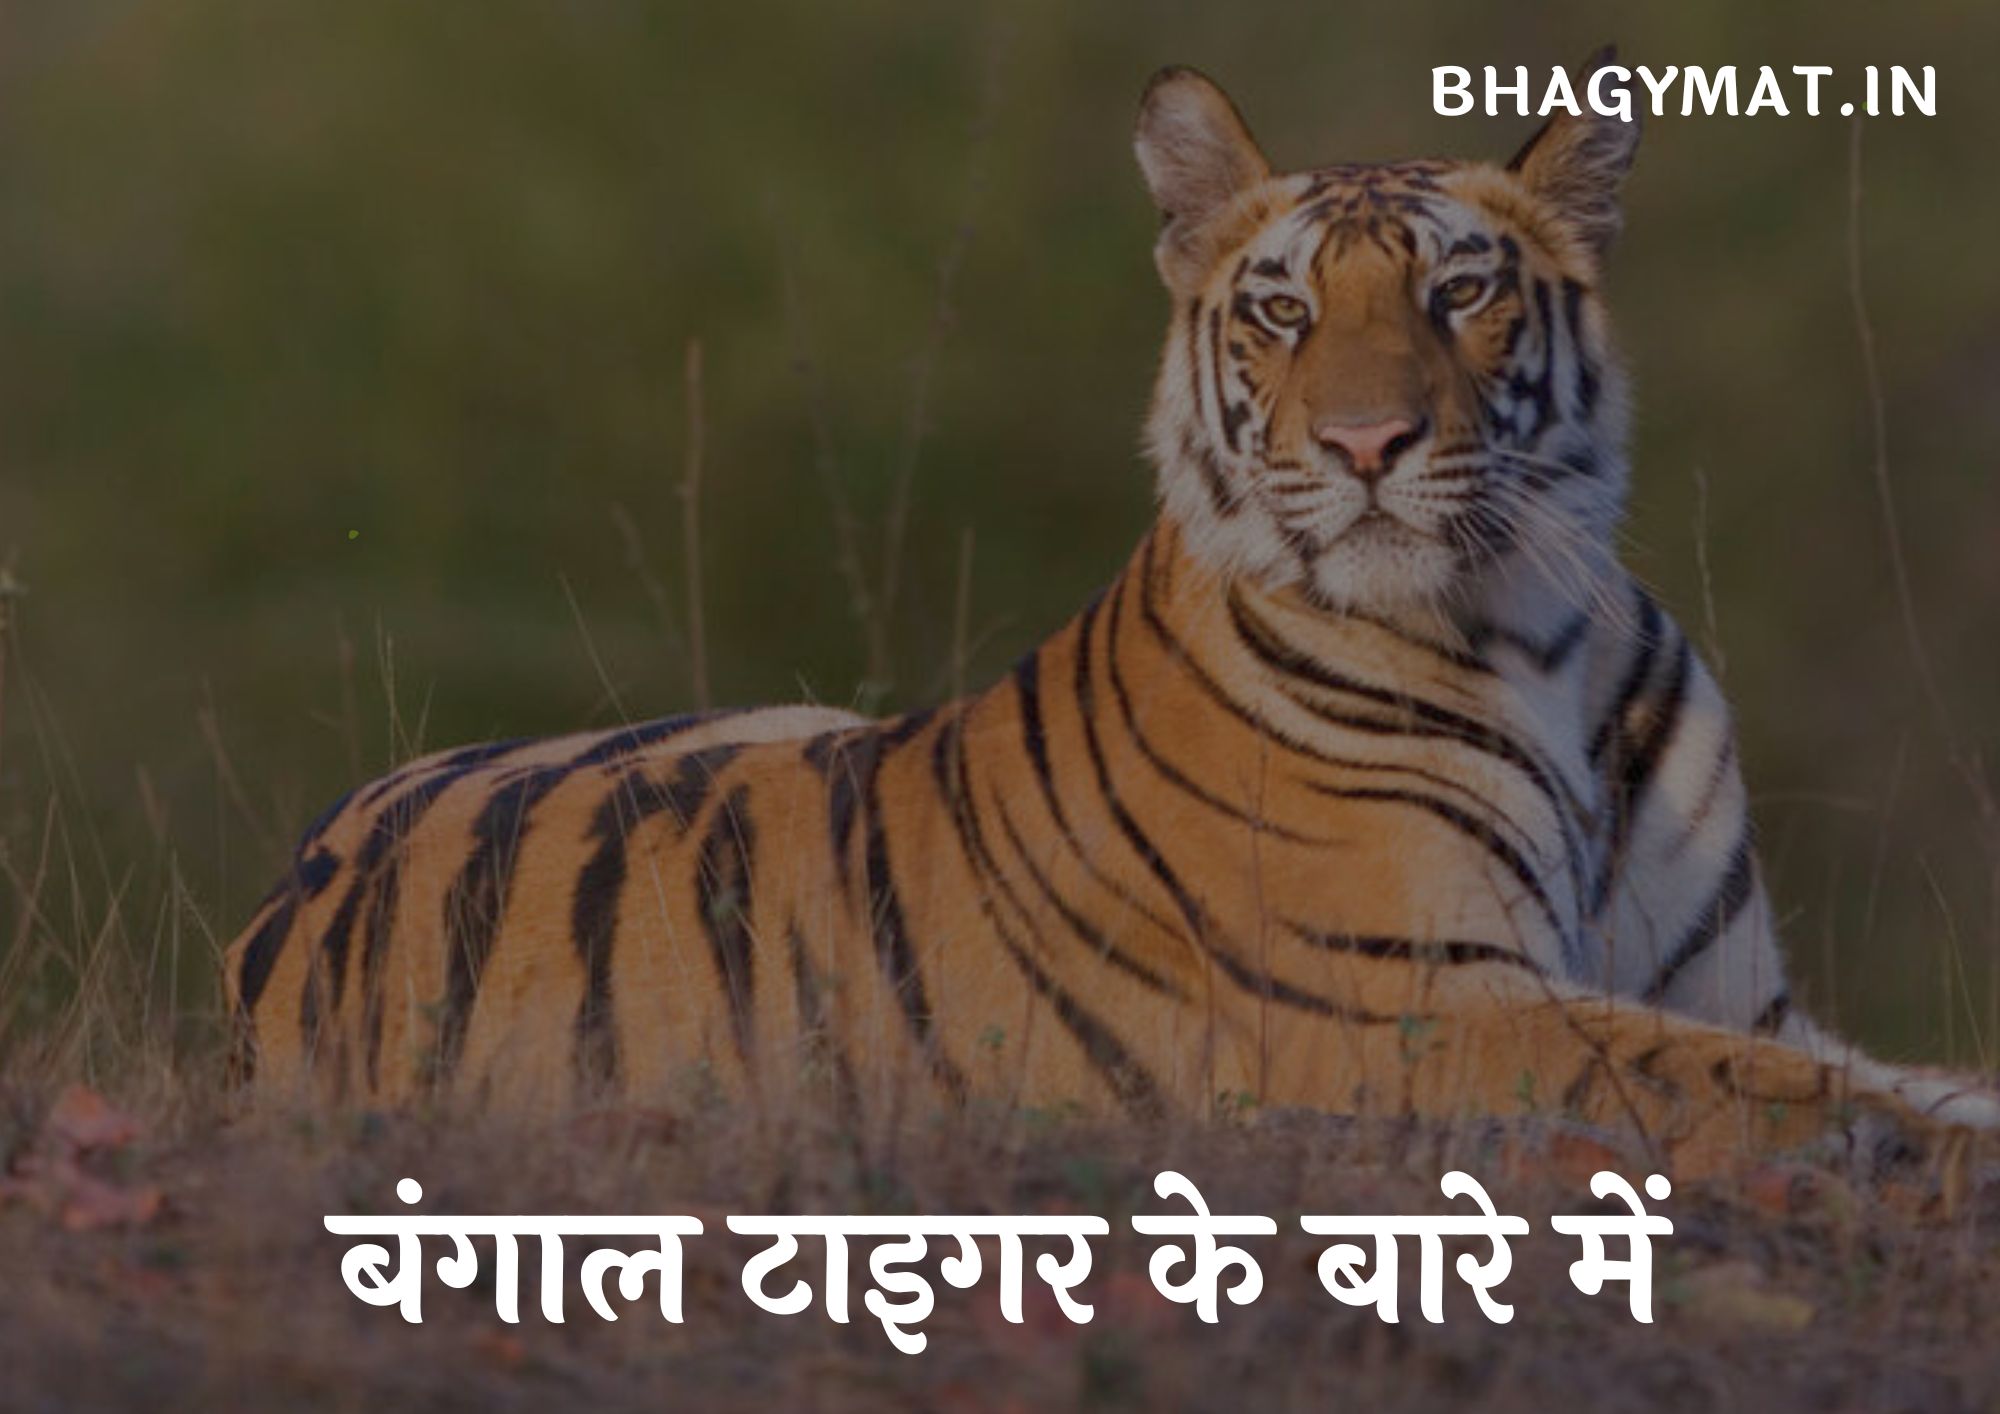 बंगाल टाइगर के बारे में बताओ - बंगाल टाइगर के बारे में जानकारी (Information About Bengal Tiger In Hindi)